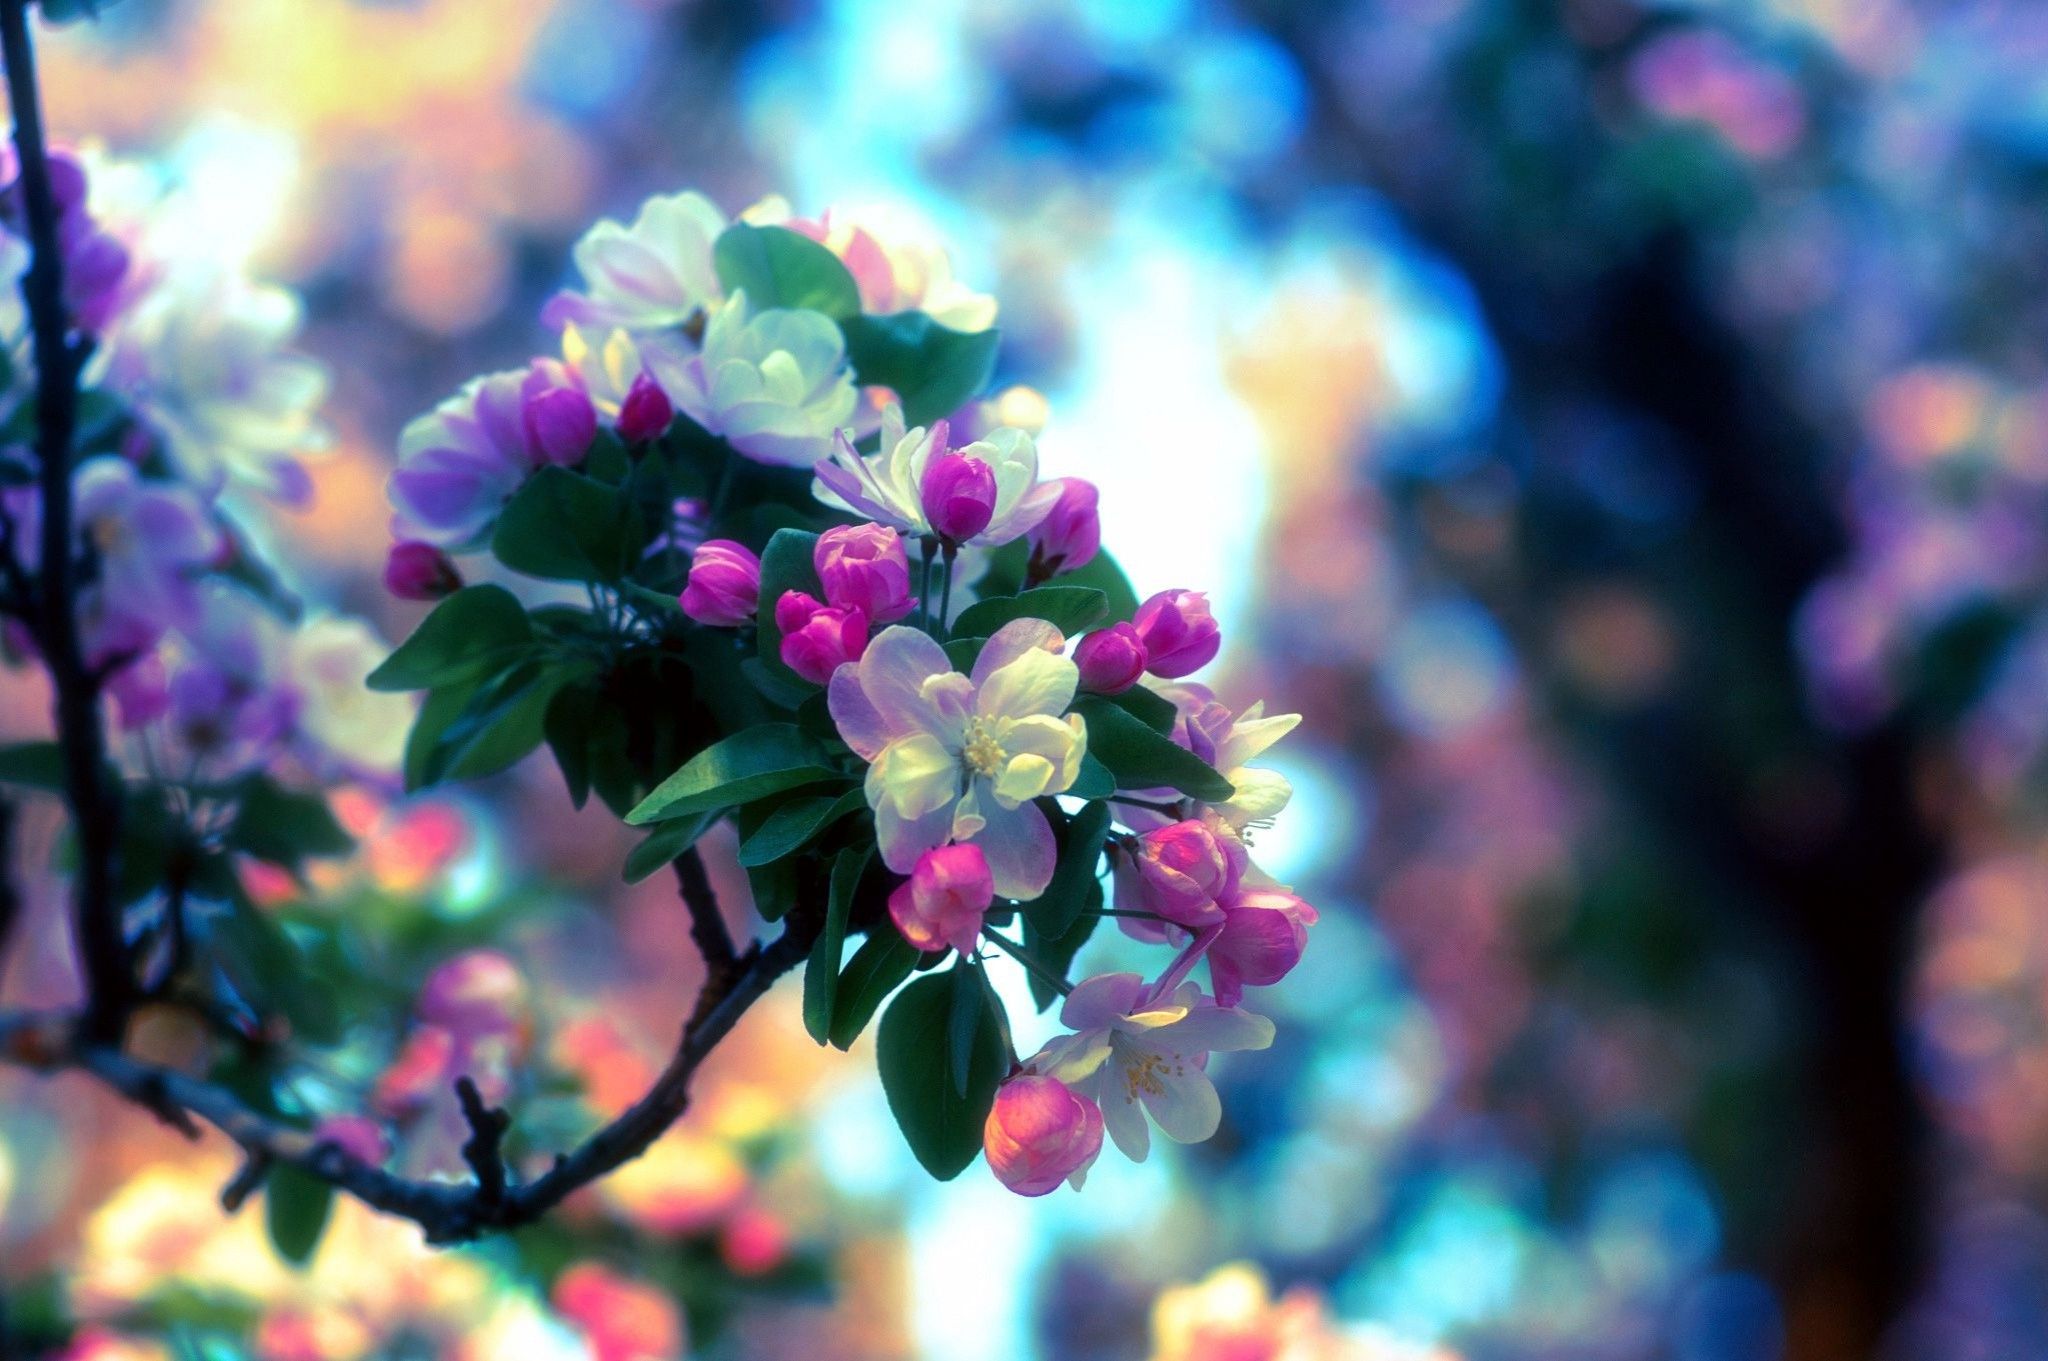 دریافت عکس استوک رنگی رنگی از شکوفه های بهاری با کیفیت بالا